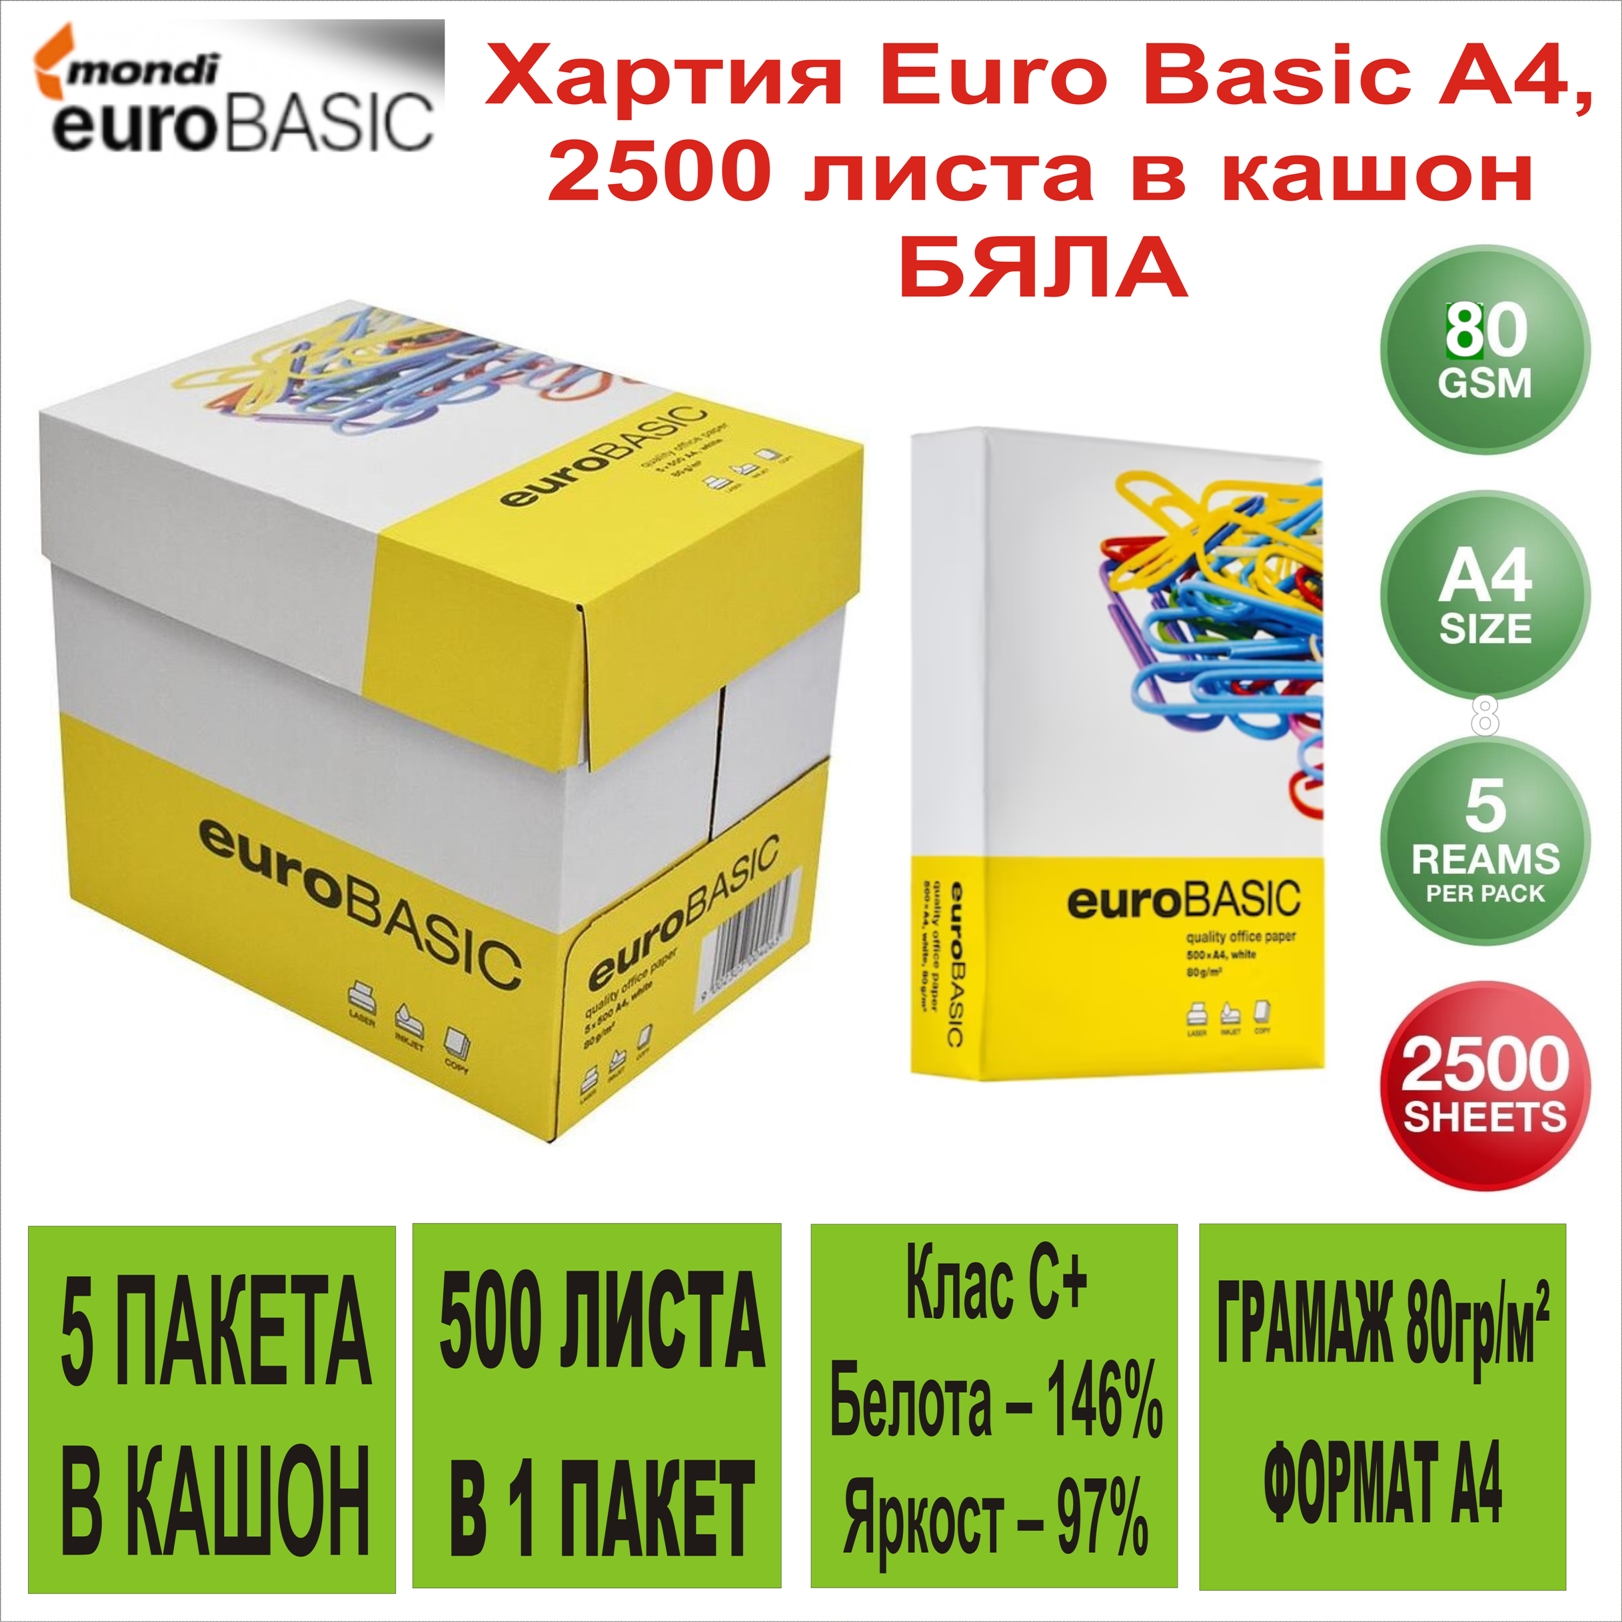 Хартия Euro Basic A4, 2500 листа в кашон 80g/m